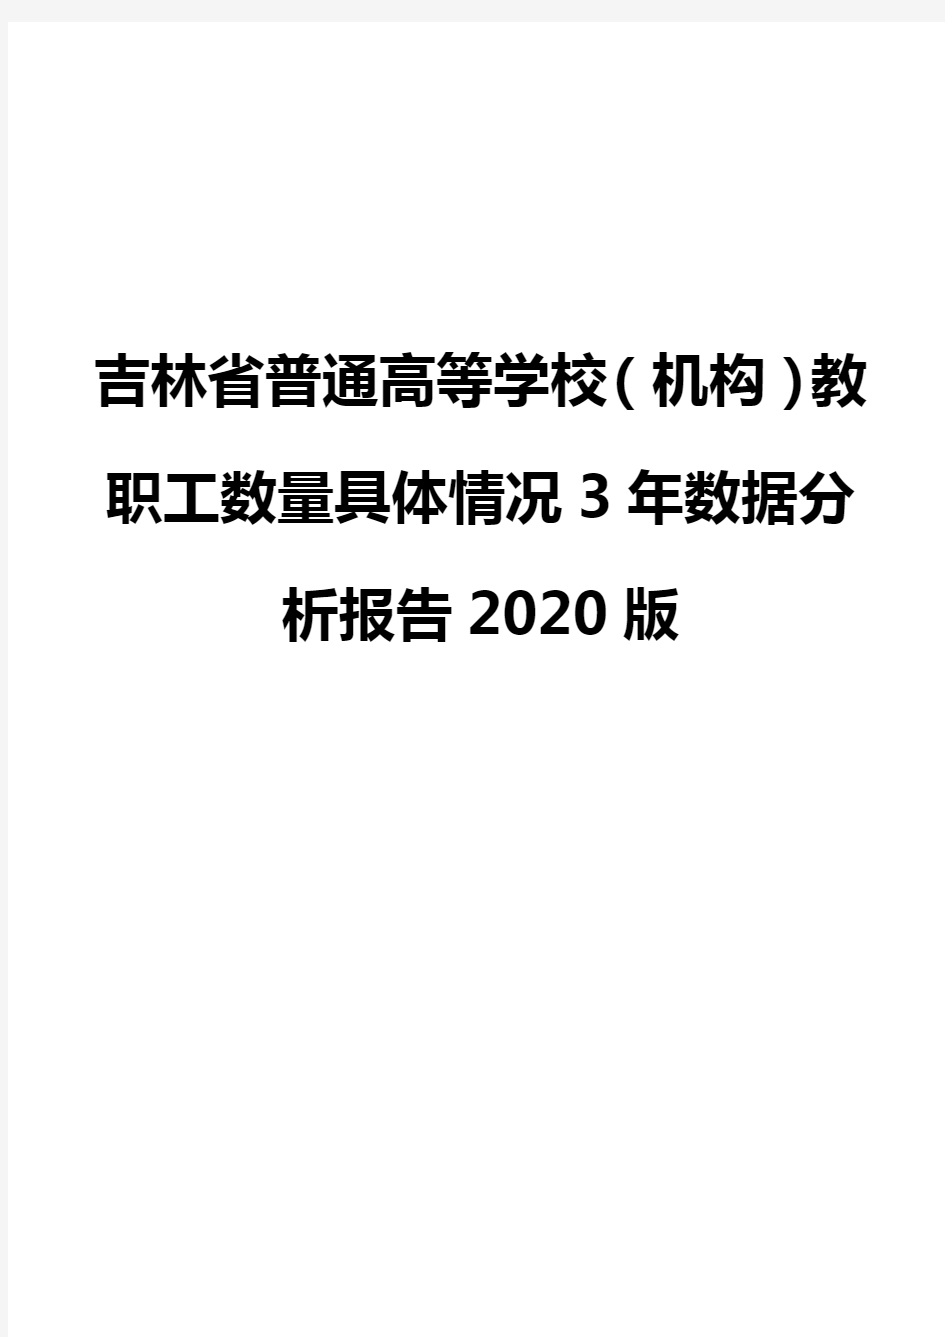 吉林省普通高等学校(机构)教职工数量具体情况3年数据分析报告2020版